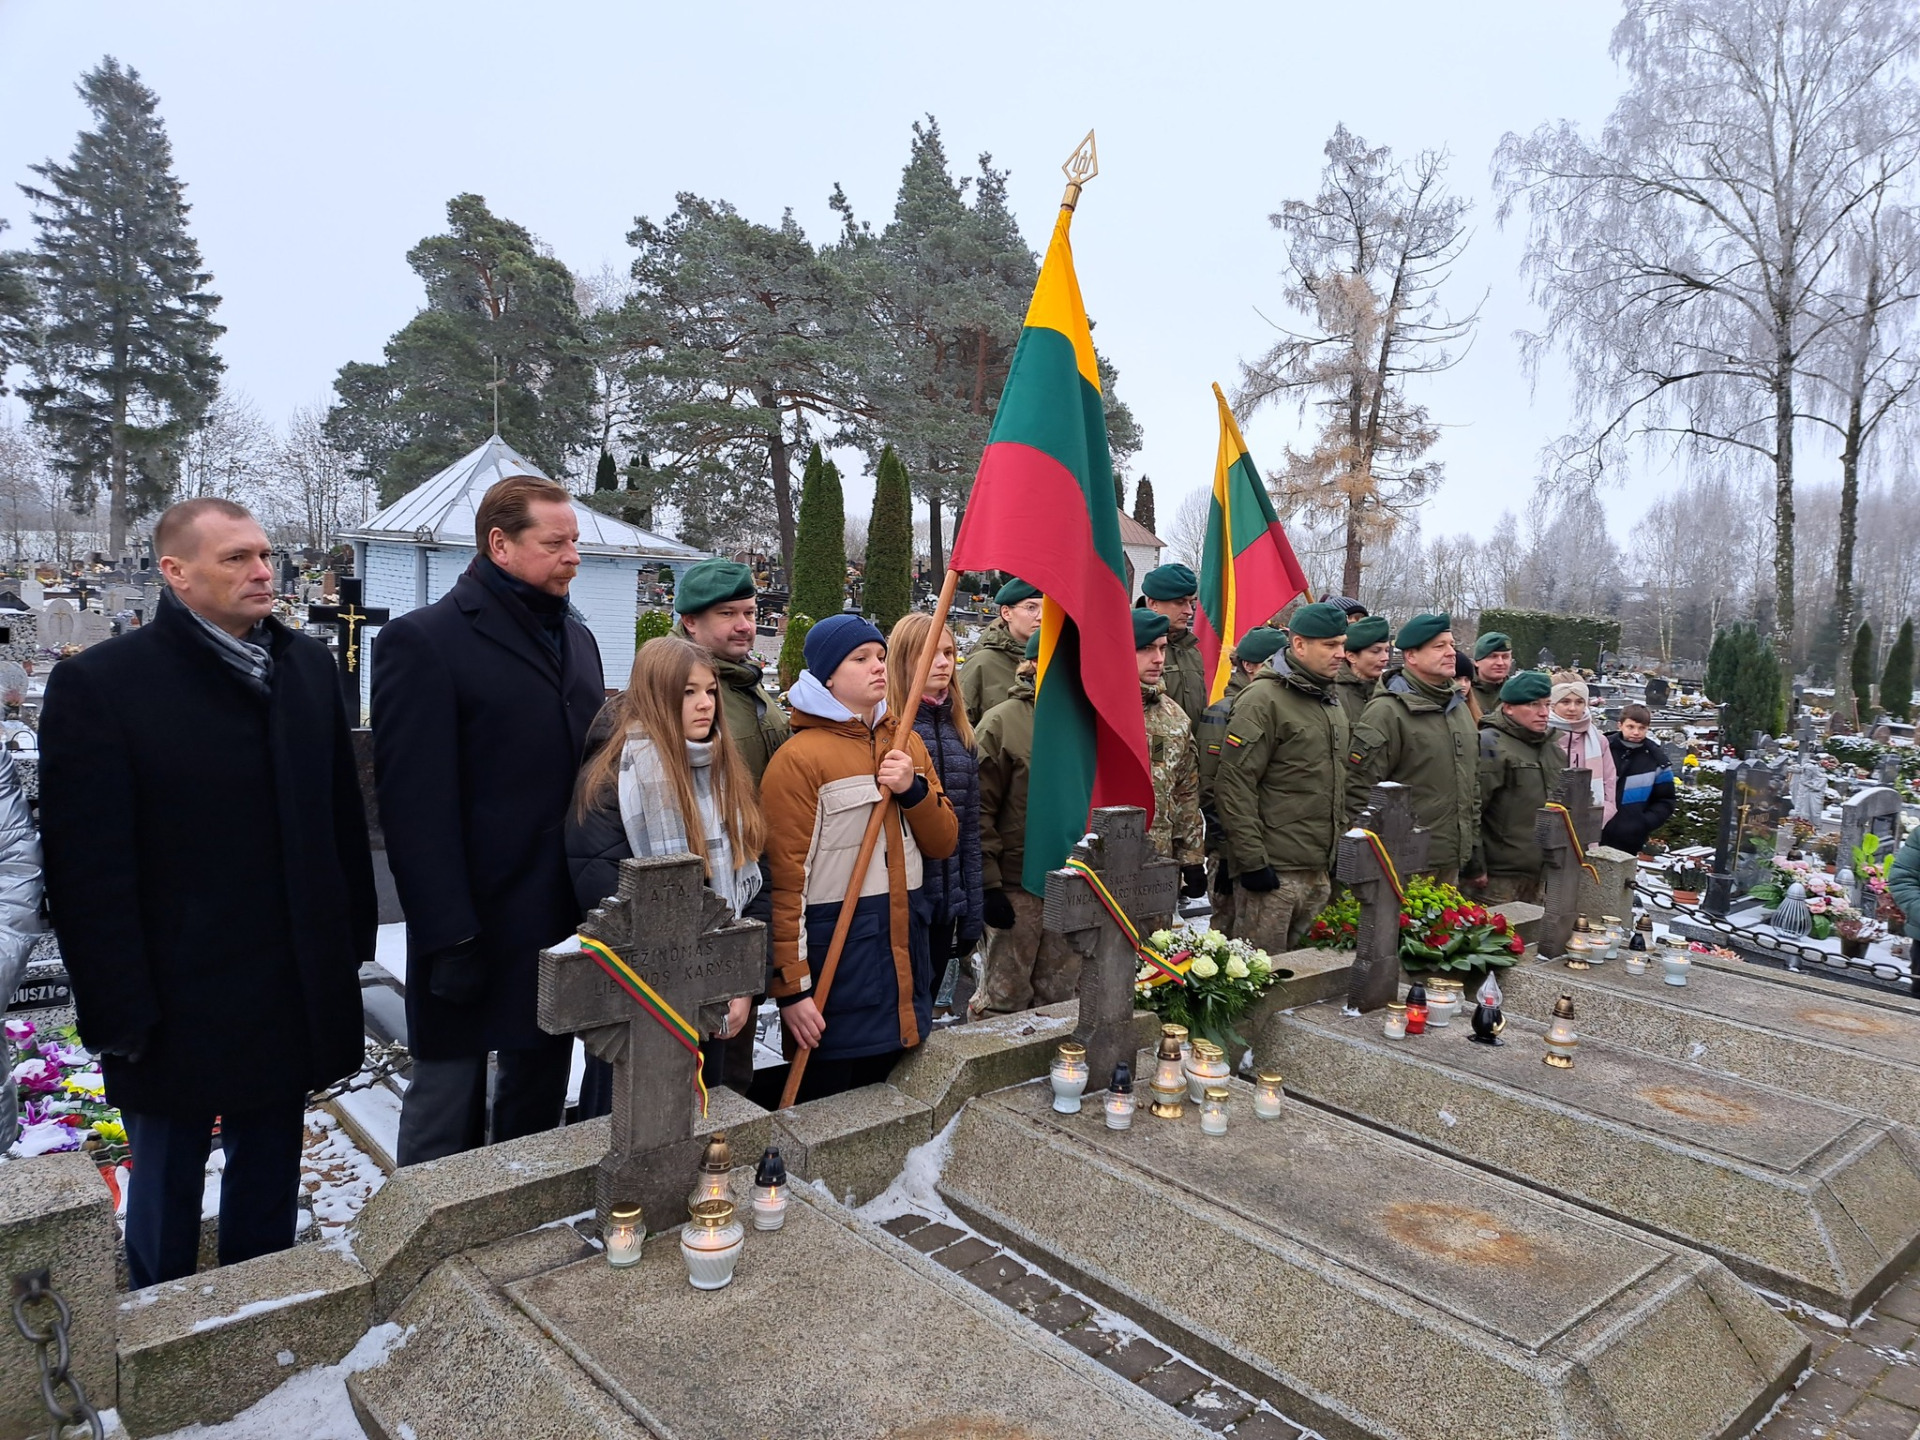 Paminėta Lietuvos kariuomenės diena - Paveikslėlis 1